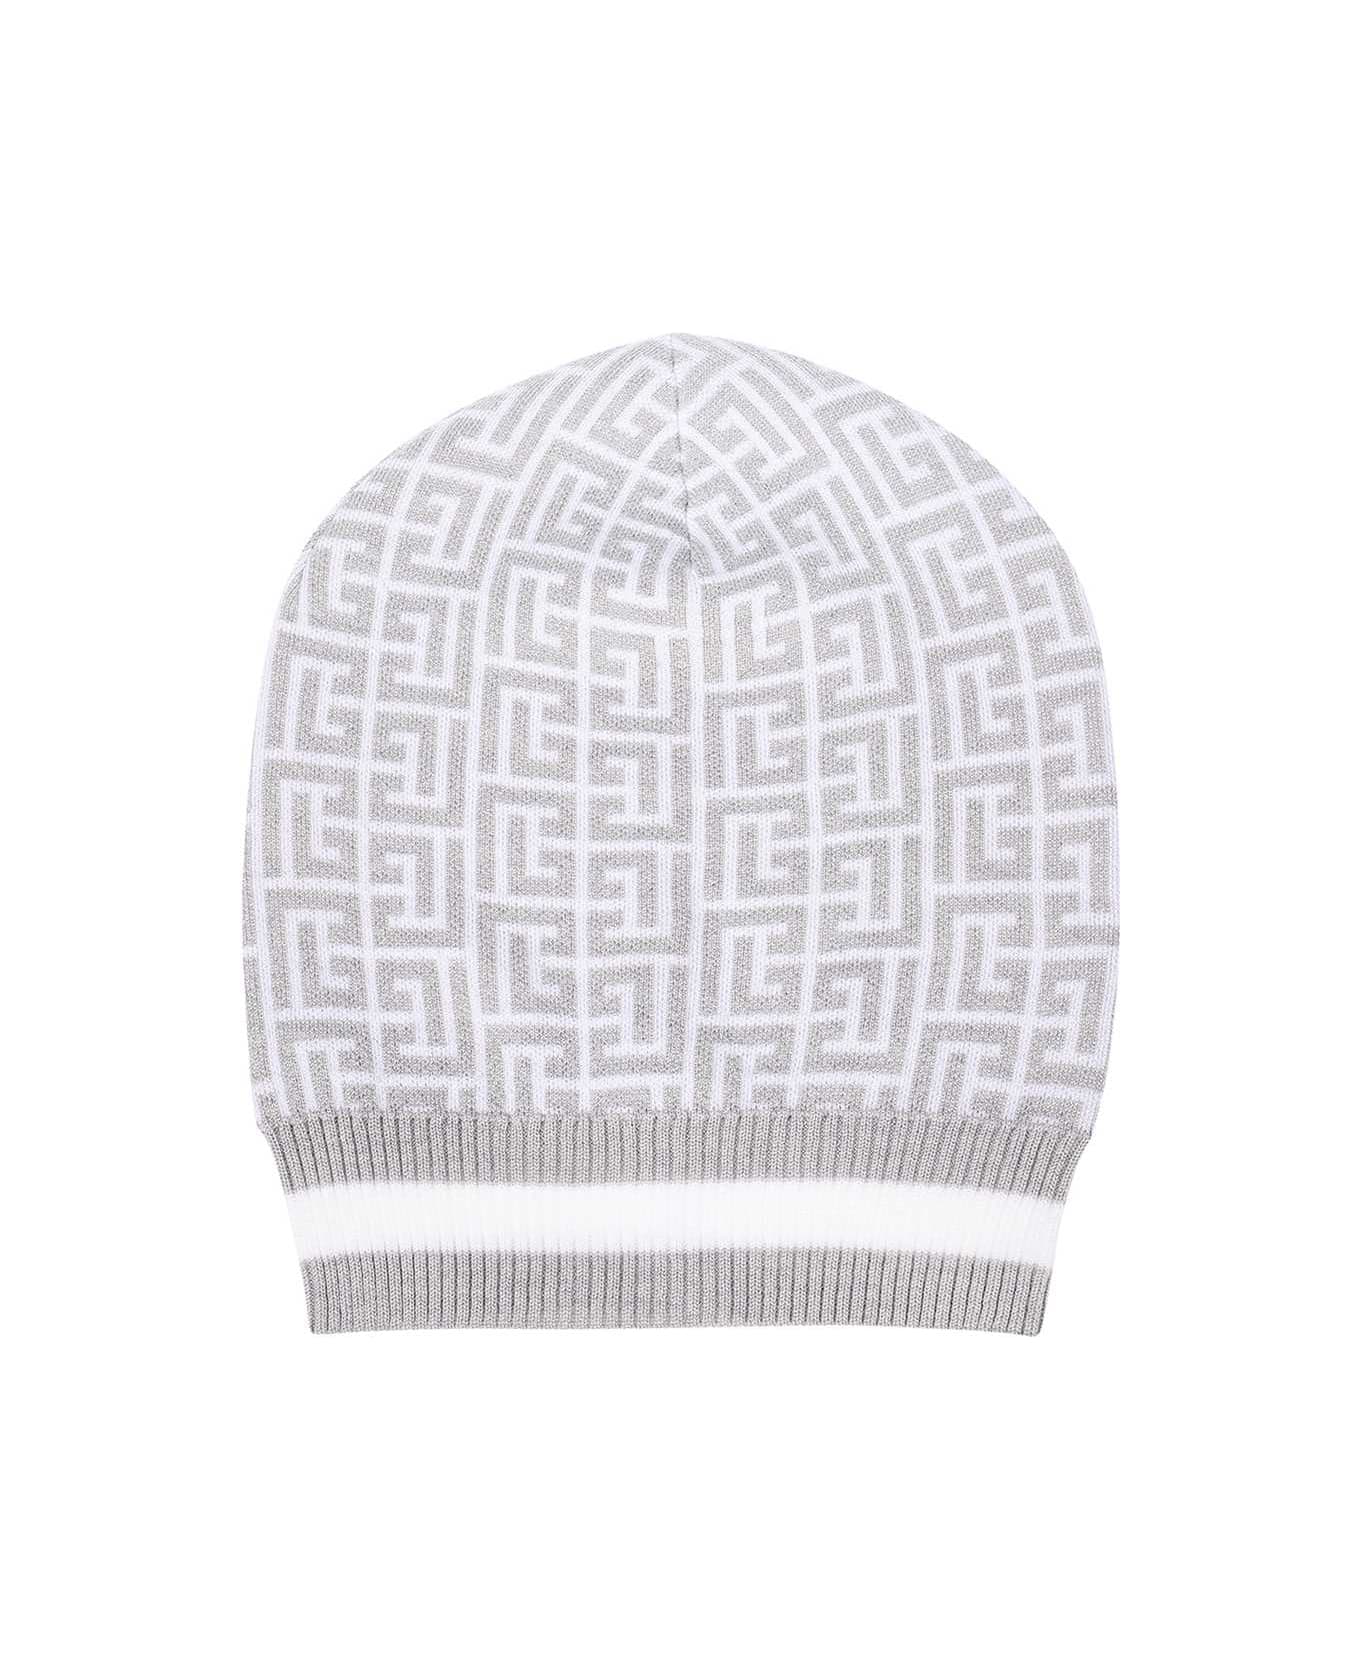 Balmain Wool Hat - White